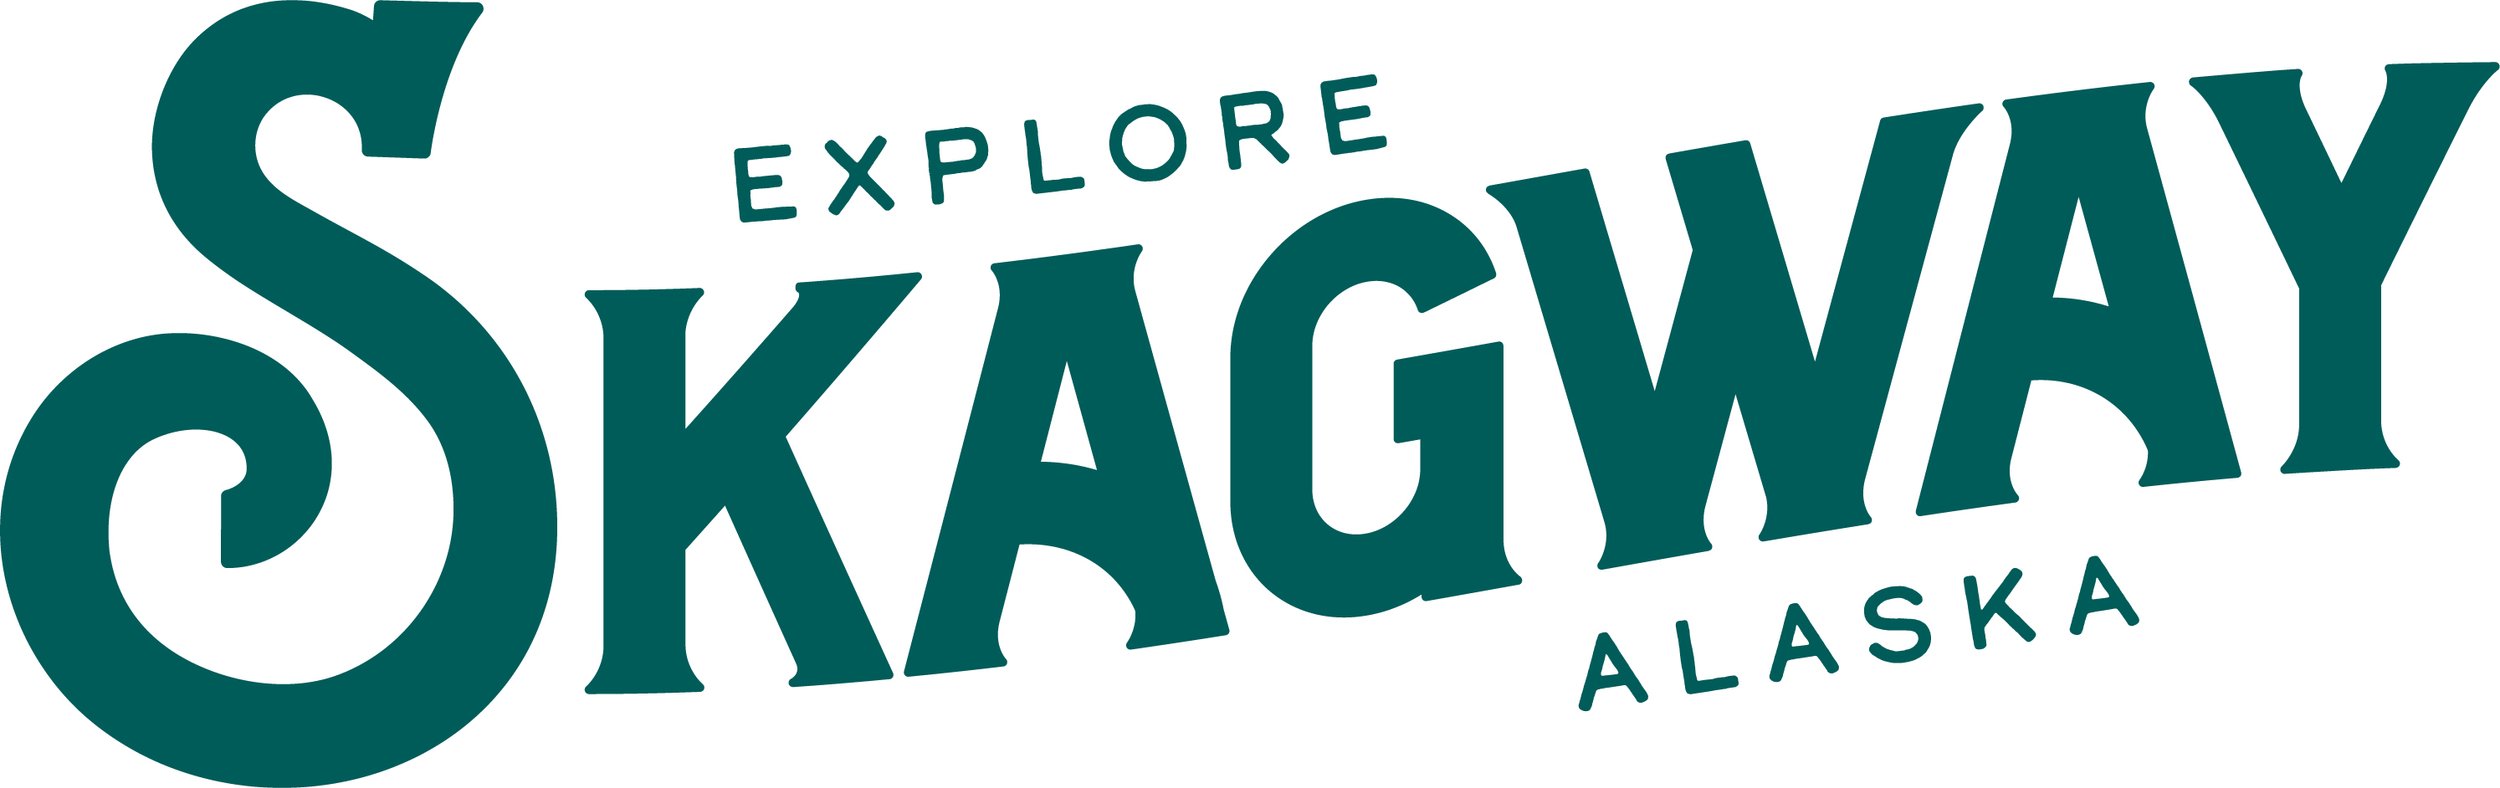 ExploreSkagway-logo-spruce-rgb.jpg